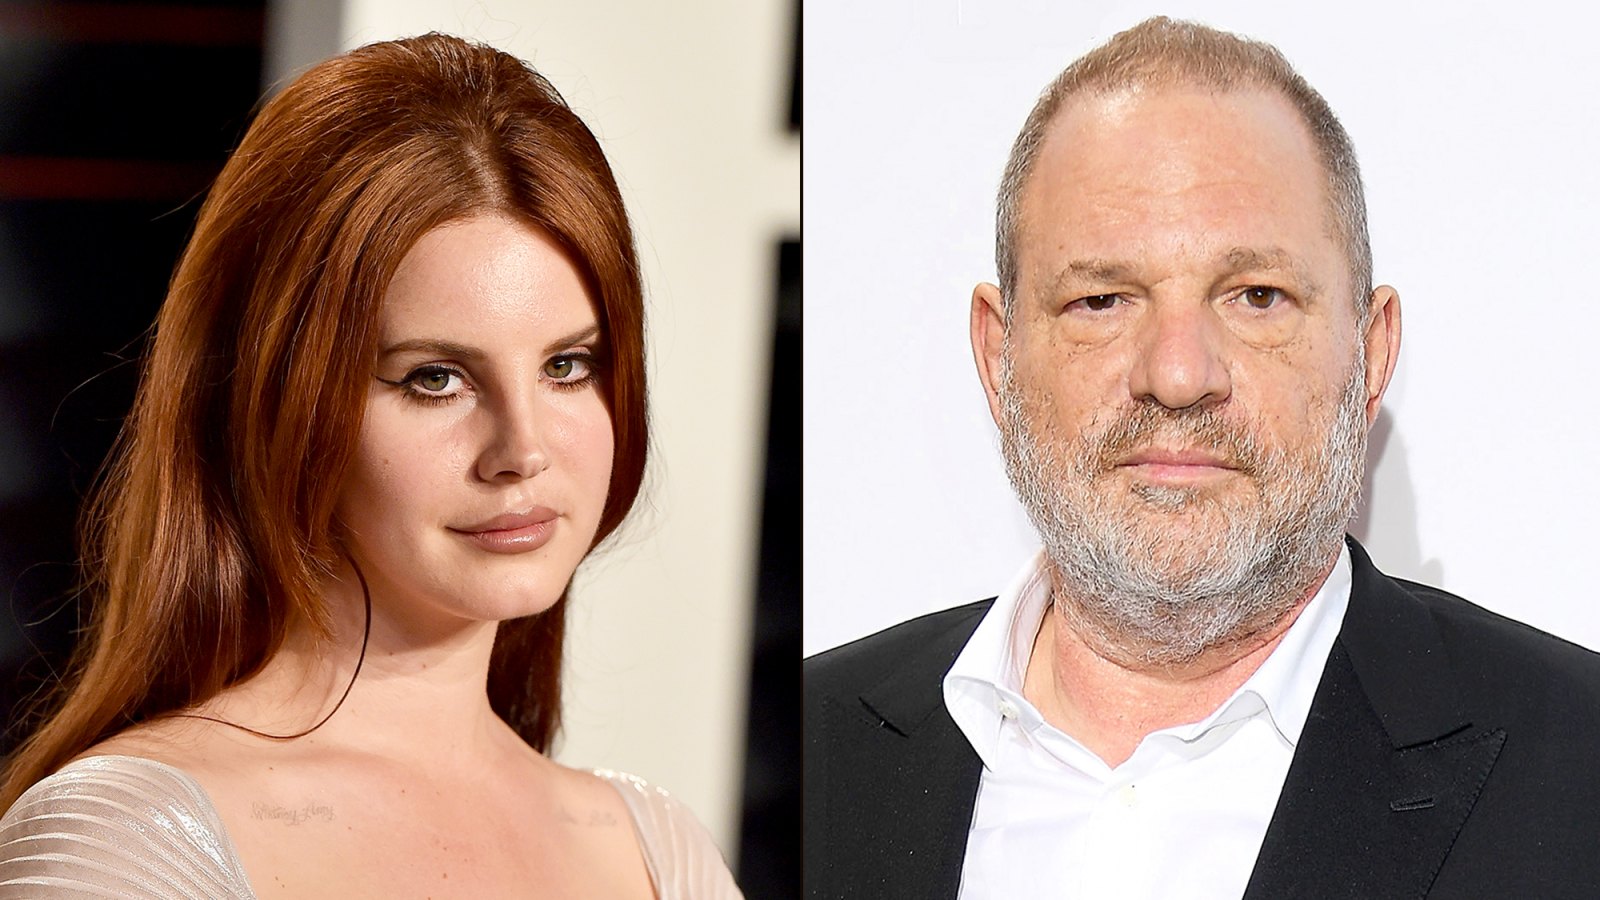 Lana Del Rey and Harvey Weinstein